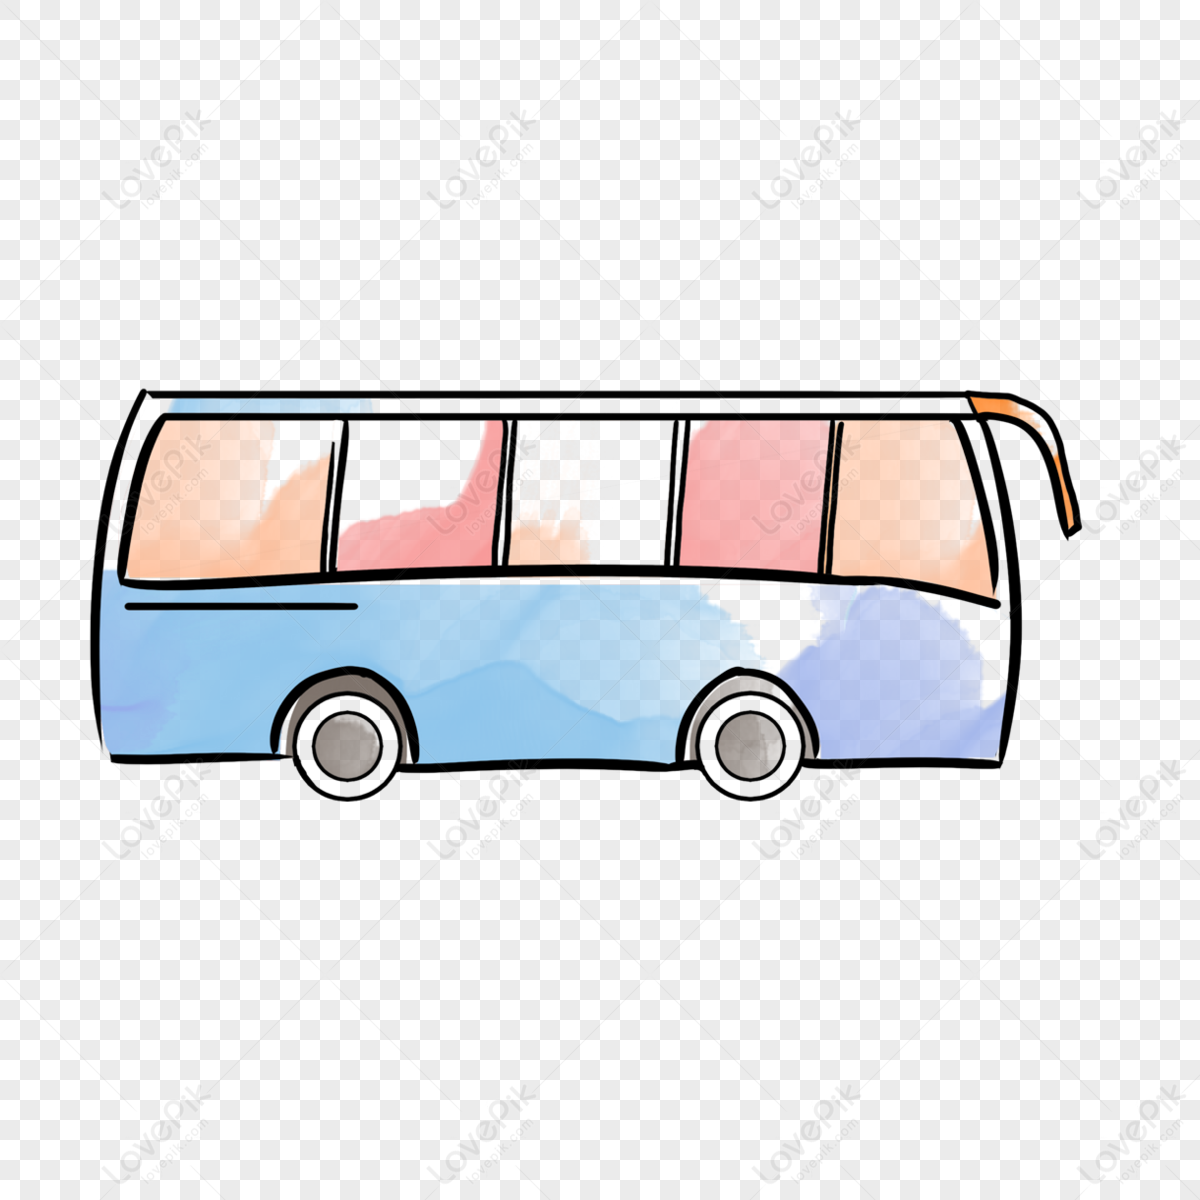 Bus, Transport, Cartoon, Drawing, Doubledecker Bus, Public Transport,  Vehicle, Tour Bus Service transparent background PNG clipart | HiClipart